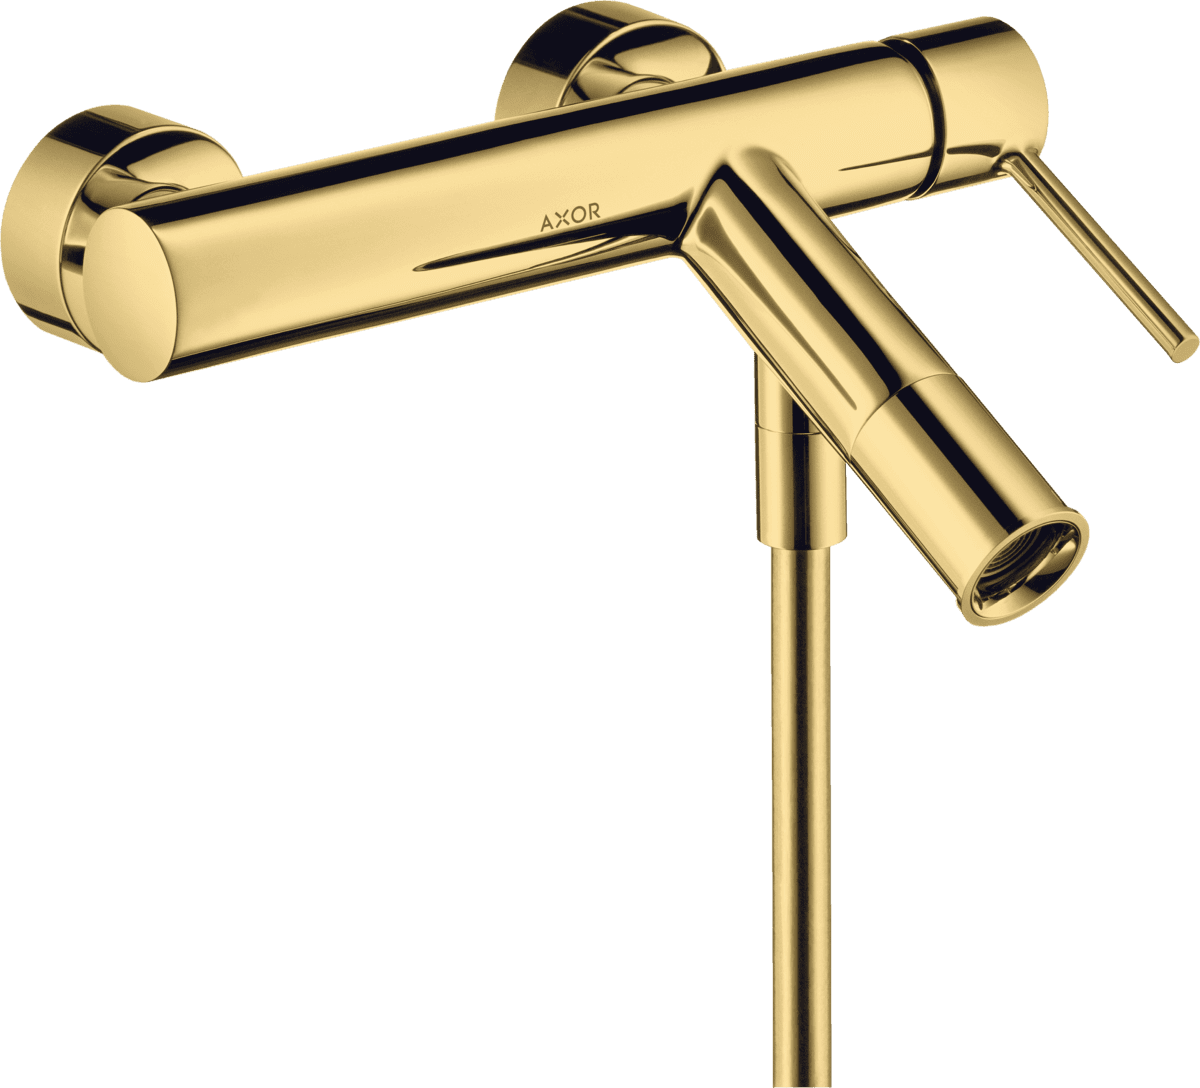 HANSGROHE AXOR Starck Tek kollu banyo bataryası aplike montaj, yuvarlak çubuk volan ile #10411990 - Parlak Altın Optik resmi